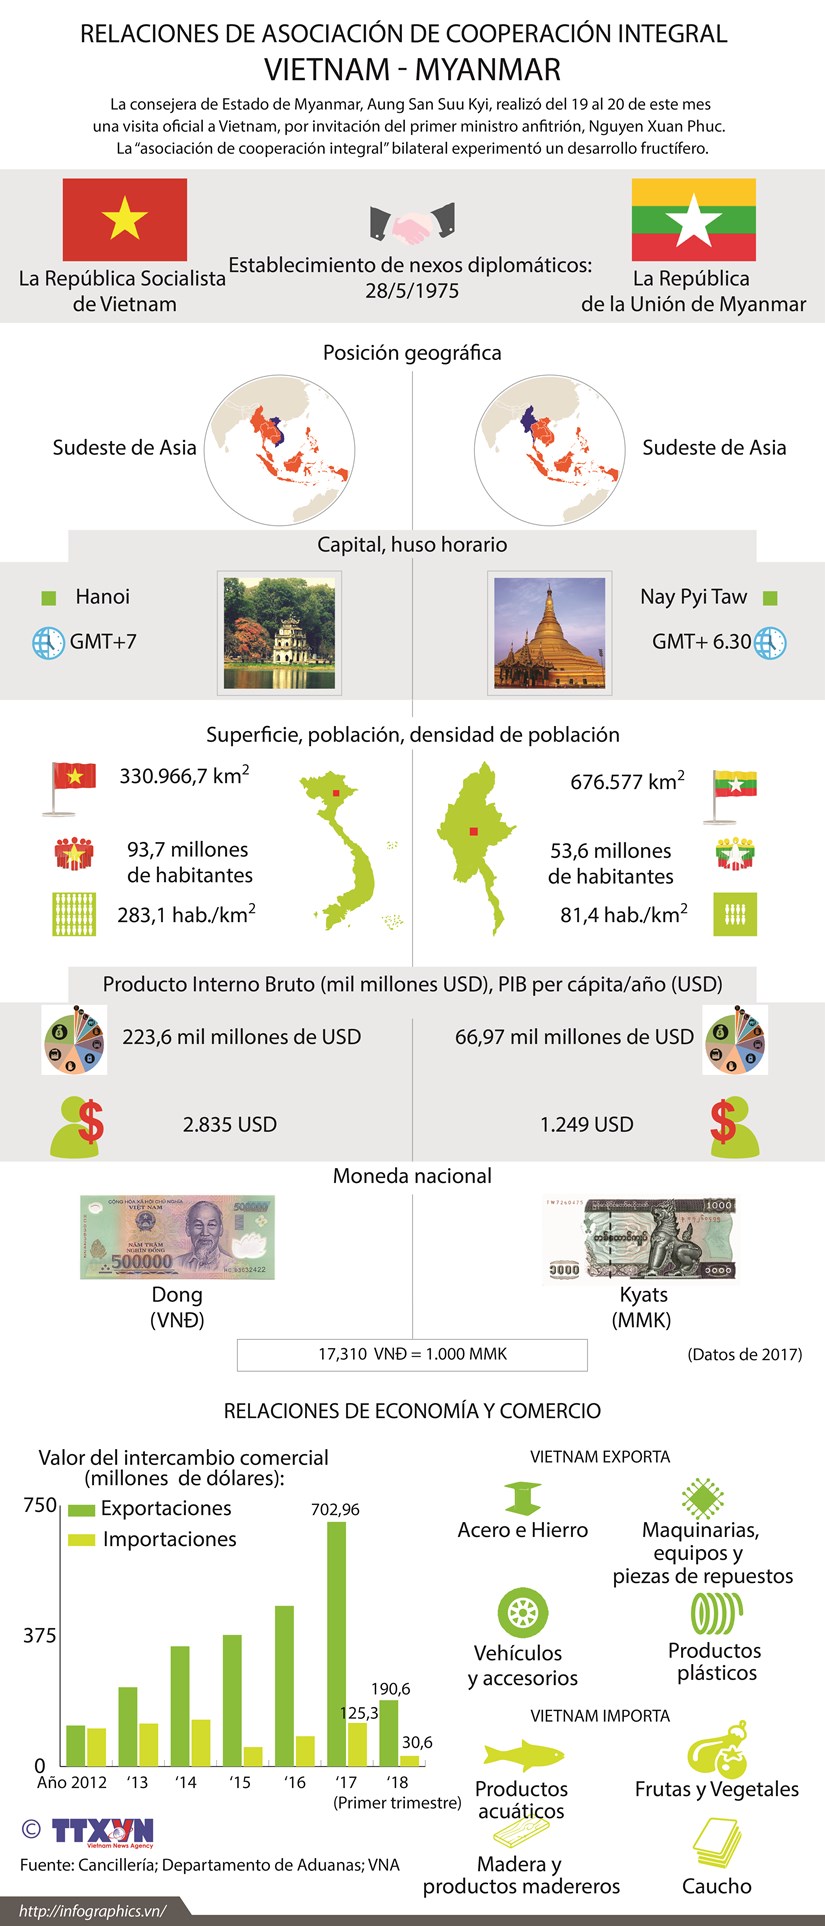 [Infografia] Relaciones de asociacion de cooperacion integral Vietnam-Myanmar hinh anh 1